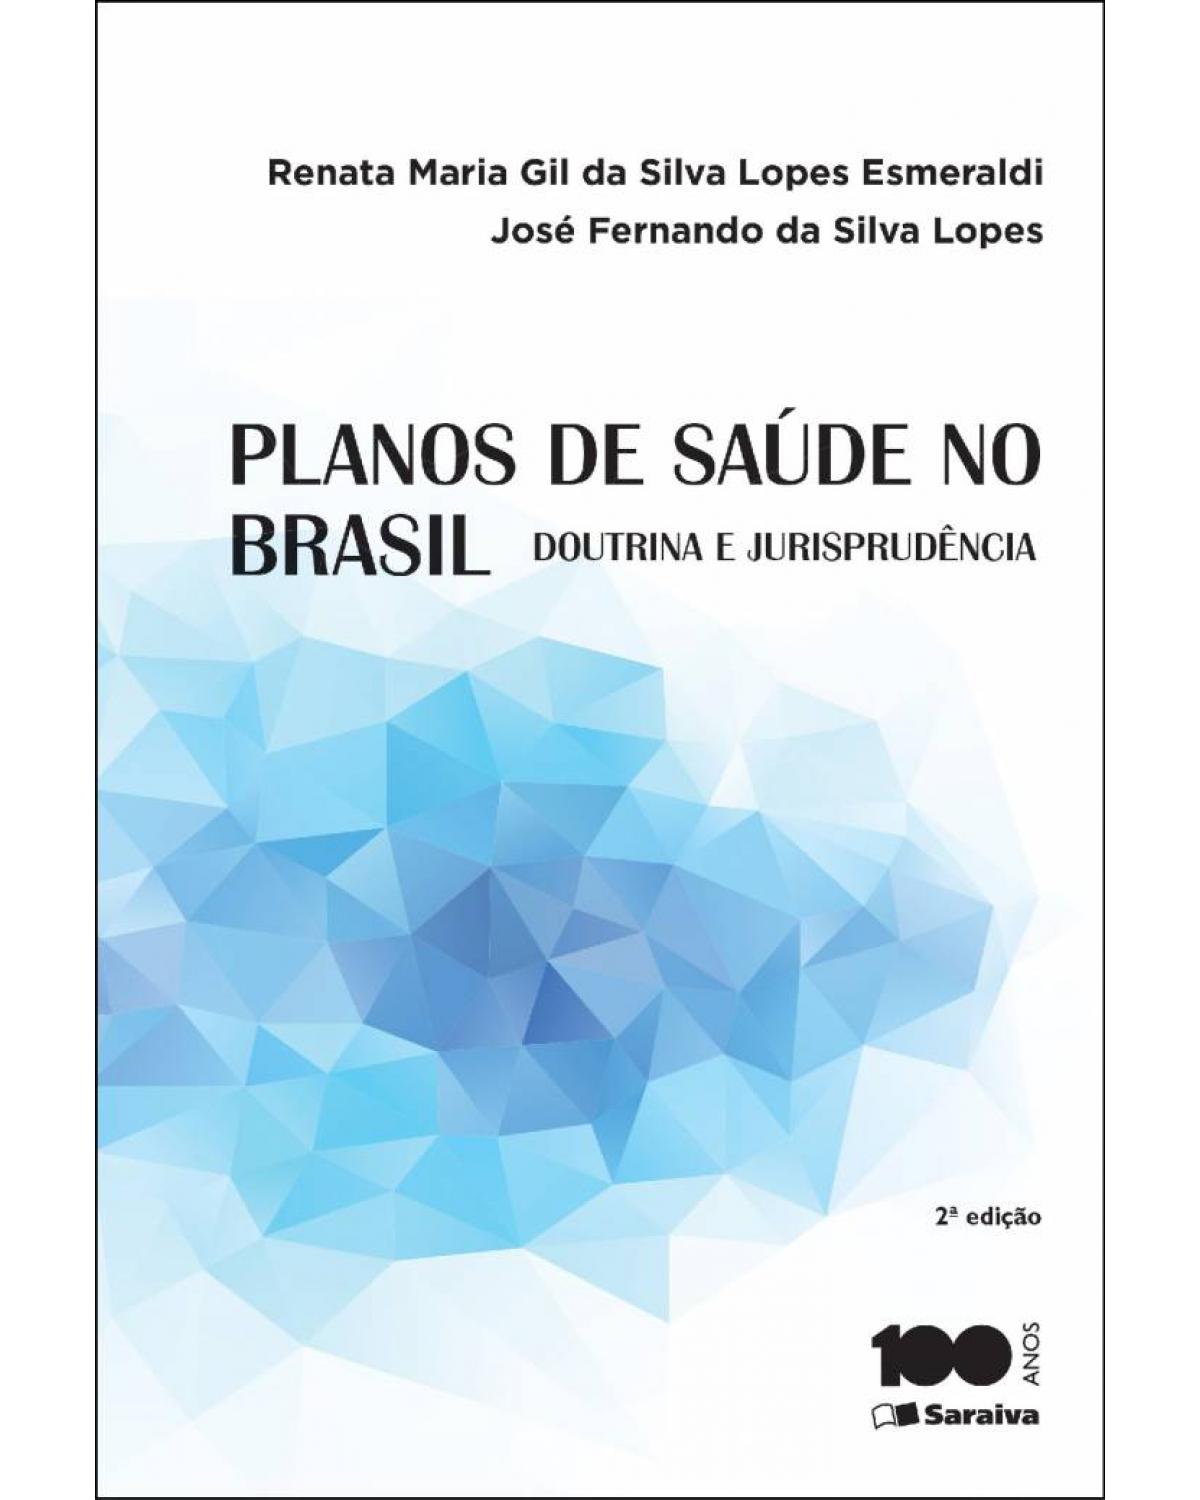 Planos de saúde no Brasil - doutrina e jurisprudência - 2ª Edição | 2015